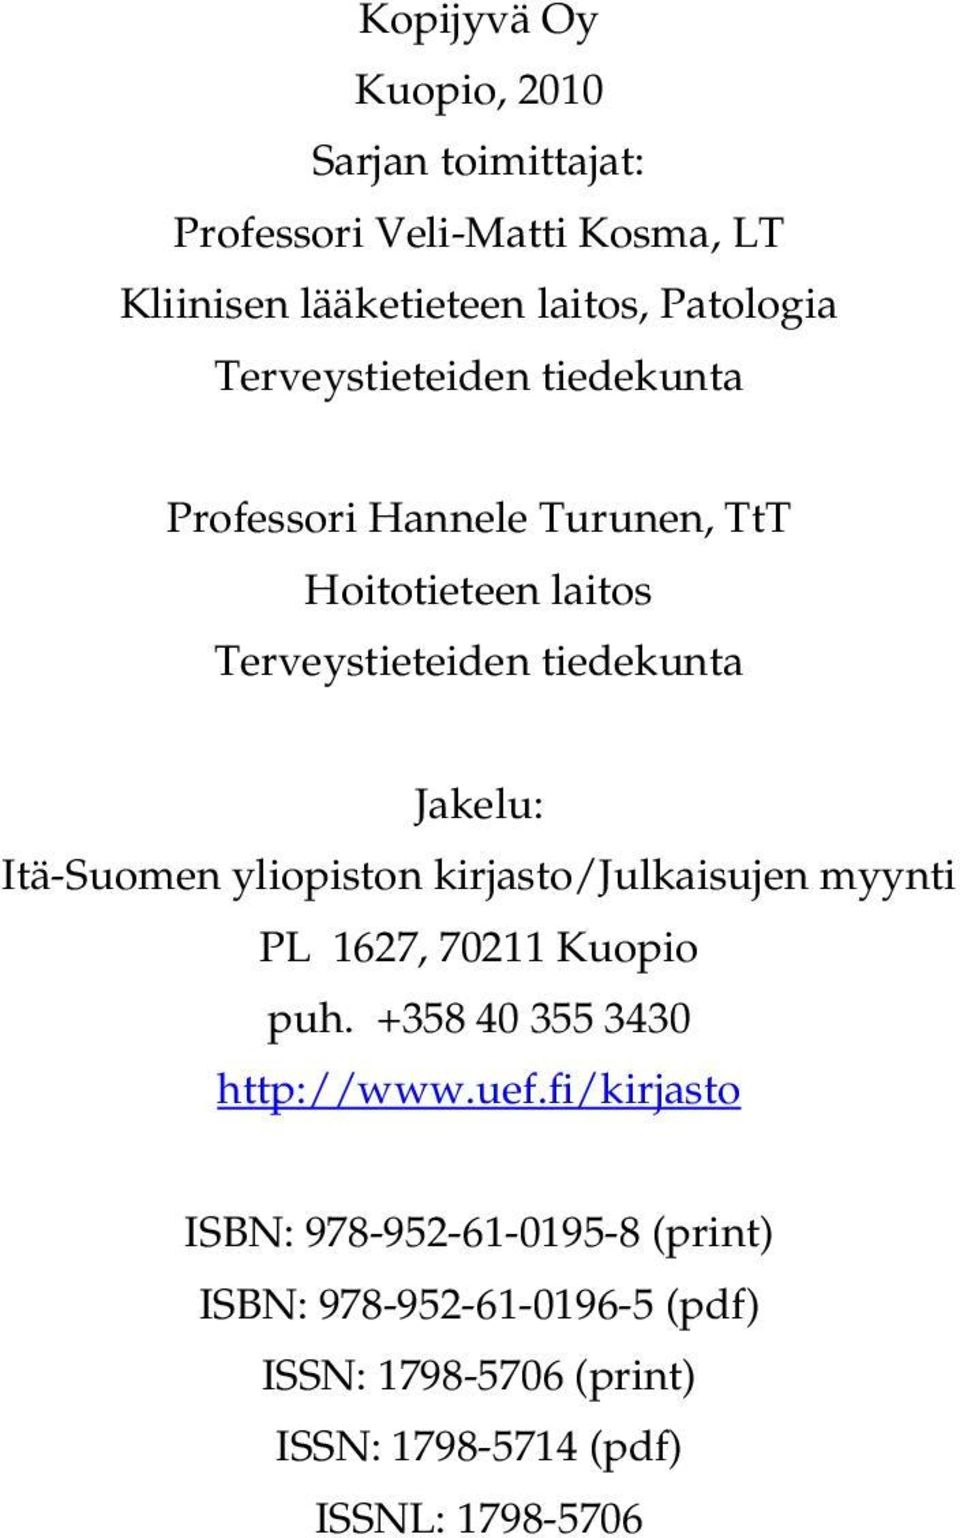 Itä-Suomen yliopiston kirjasto/julkaisujen myynti PL 1627, 70211 Kuopio puh. +358 40 355 3430 http://www.uef.